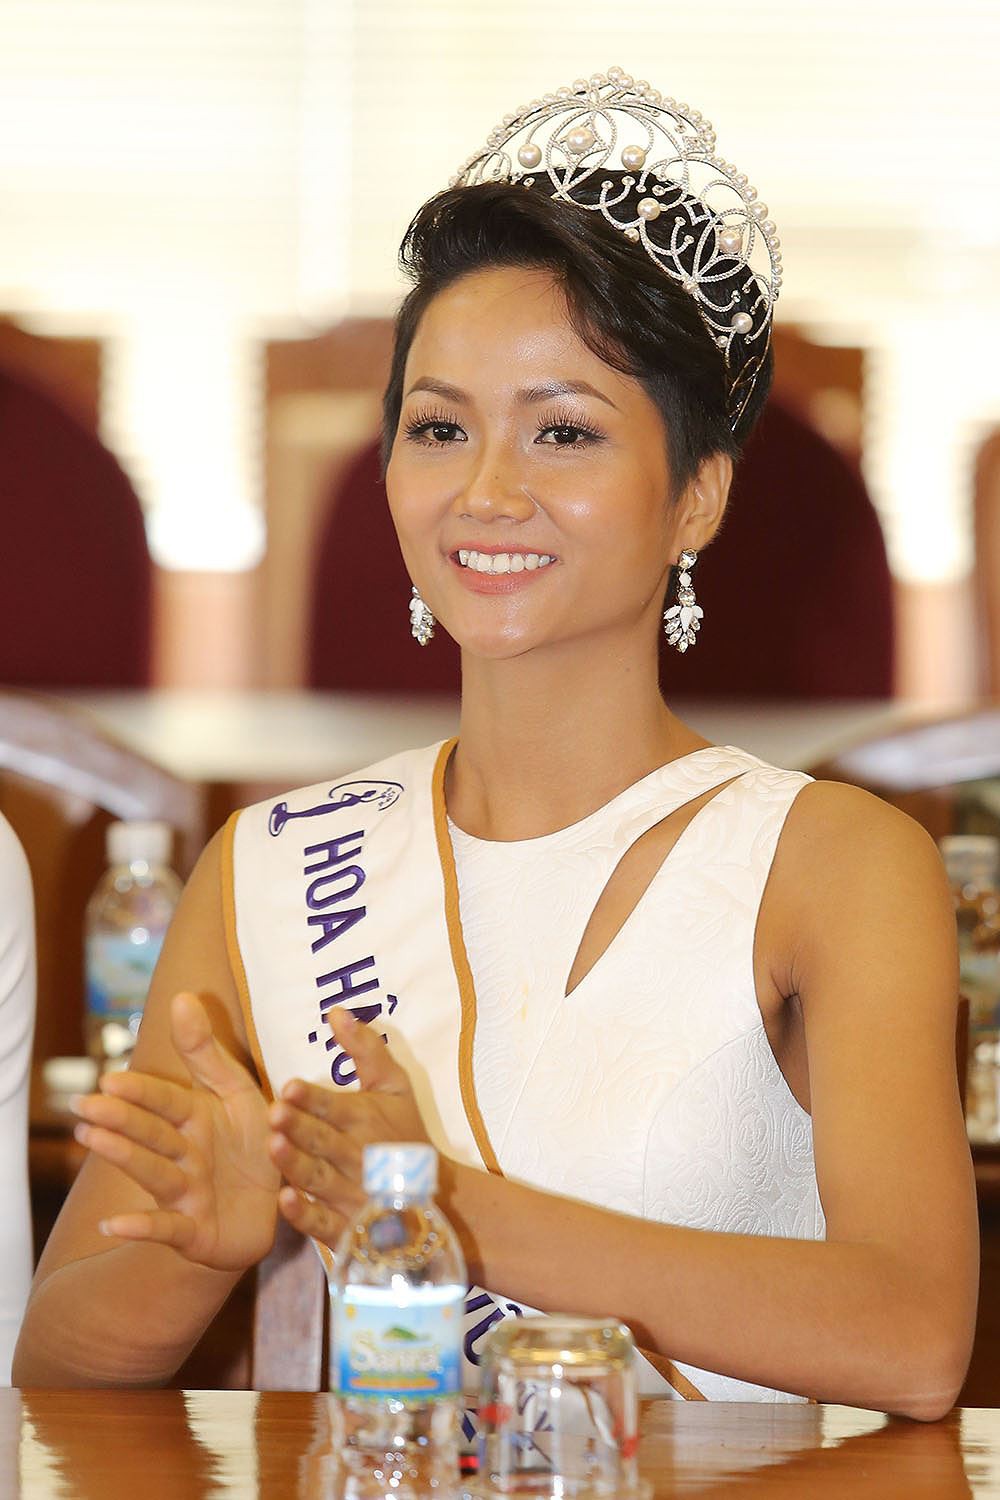 Thật may: Kể từ khi đăng quang đến nay, Hoa hậu HHen Niê chưa lần nào mặc lỗi! - Ảnh 5.